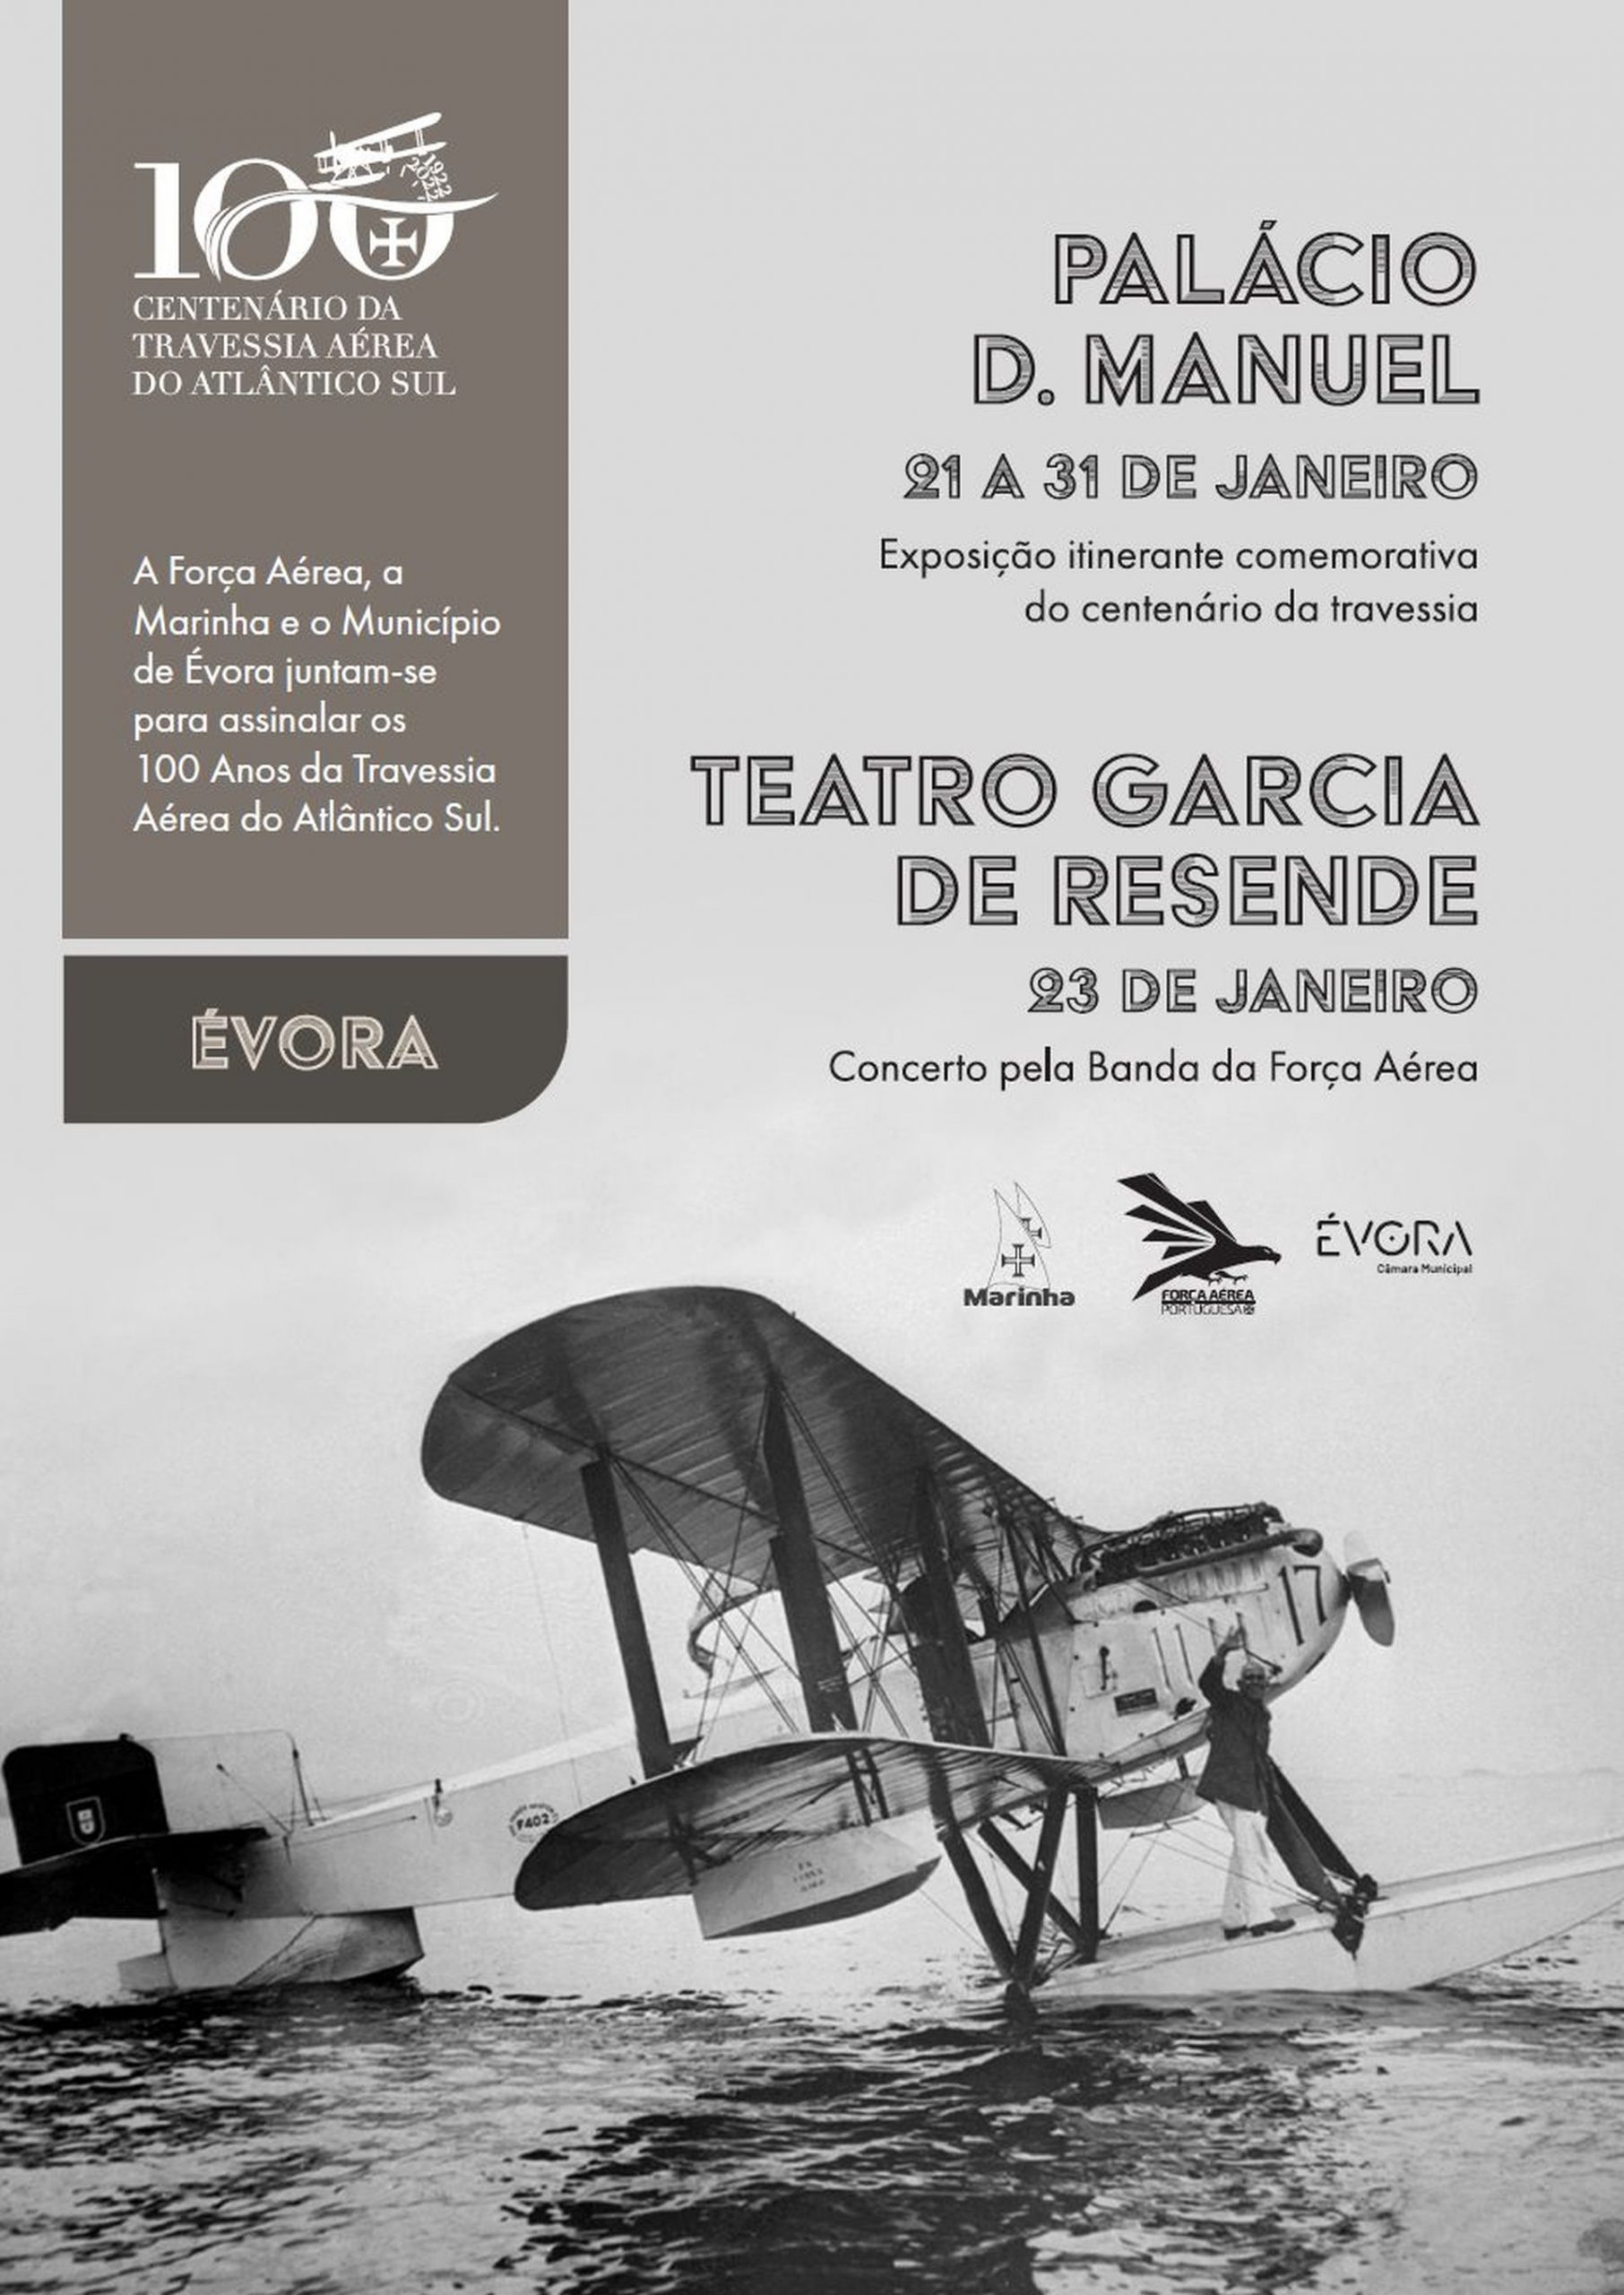 (Português) Exposição e concerto em Évora assinalam comemorações do Centenário da Travessia Aérea do Atlântico Sul